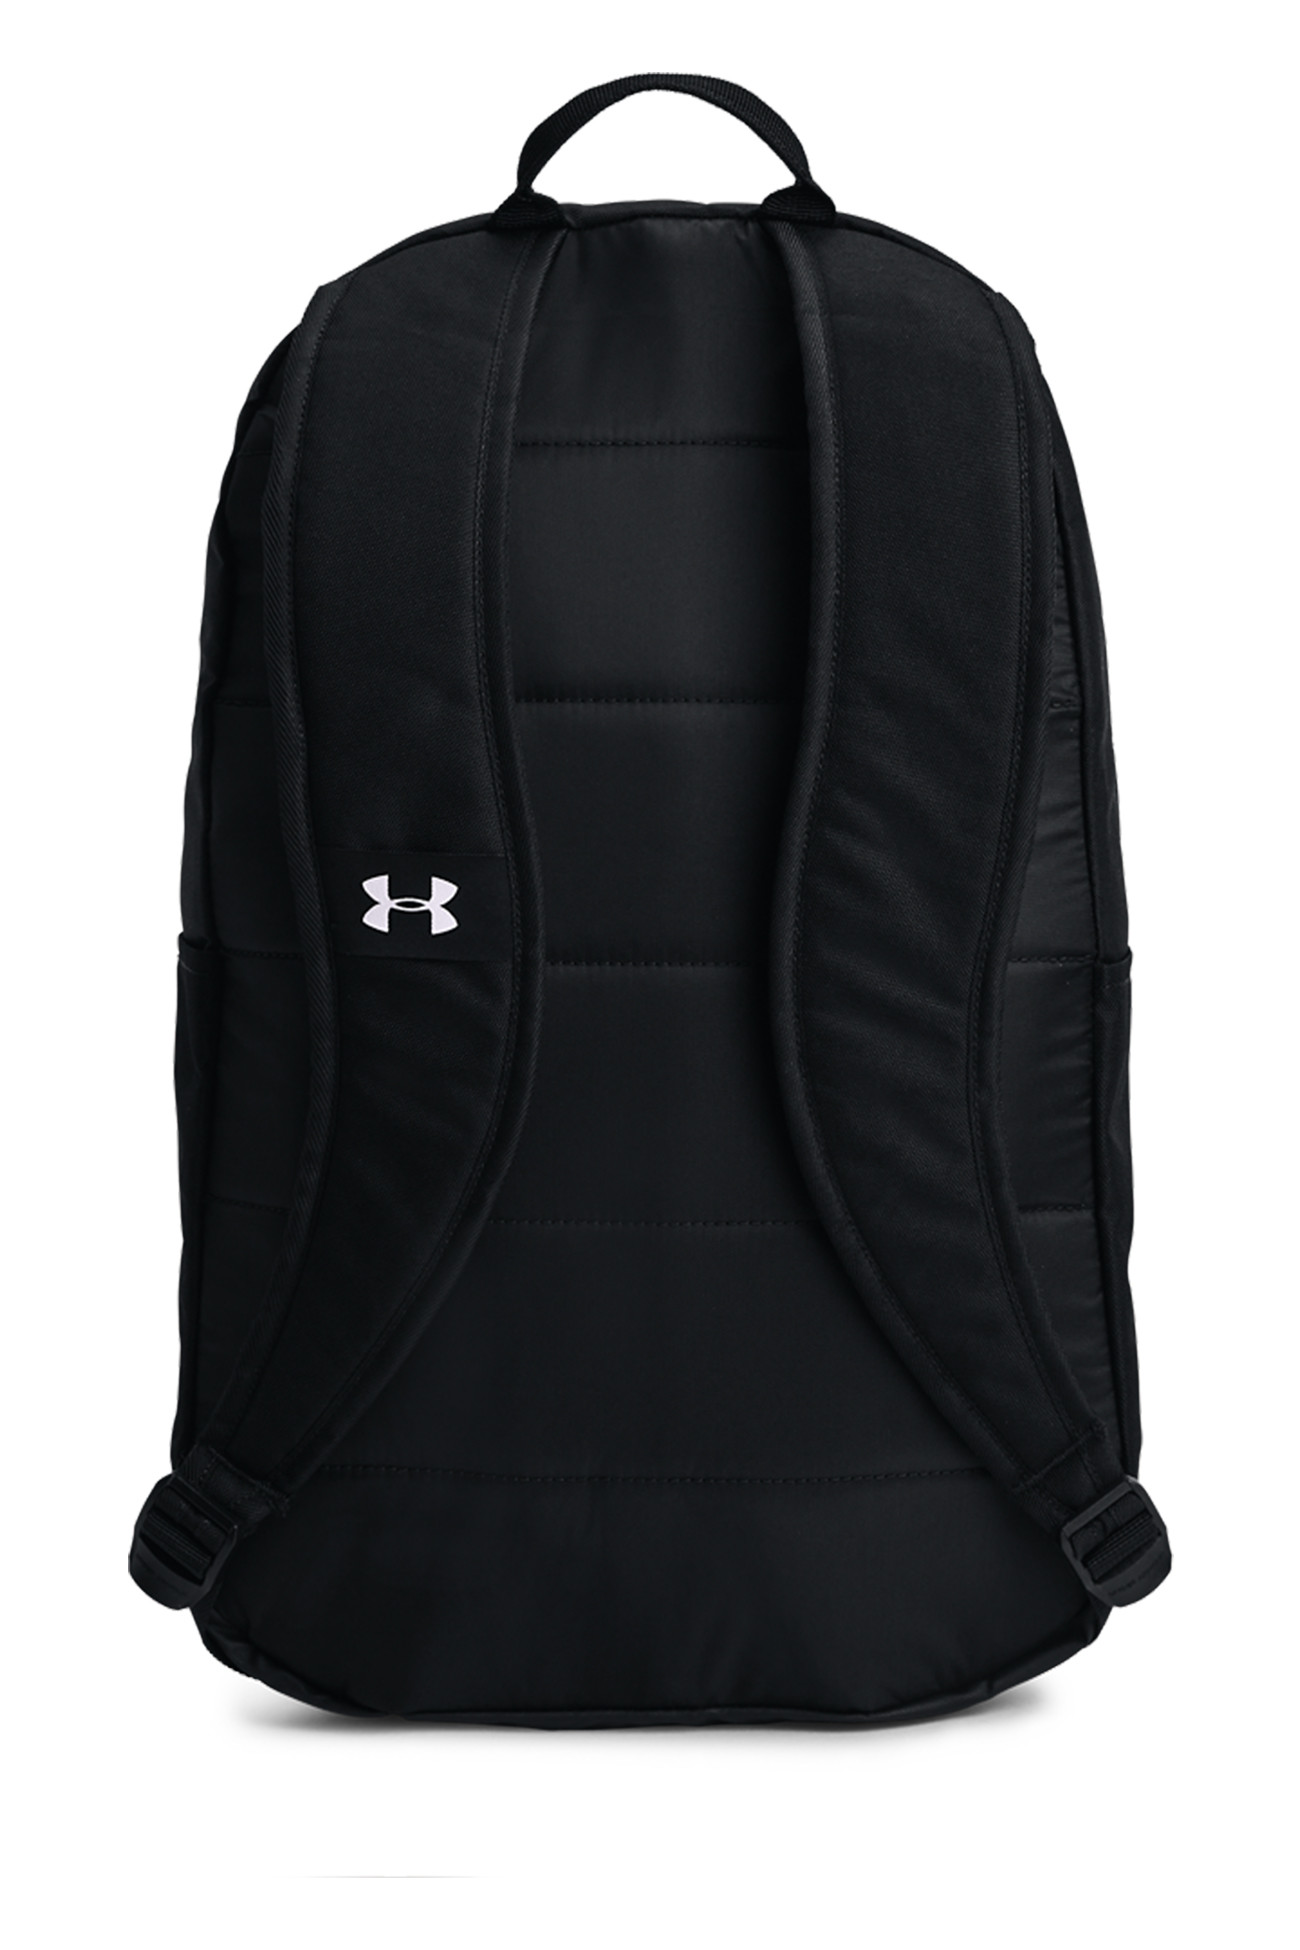 Рюкзак Under Armour UA Halftime Backpack черный 1362365-001 изображение 3